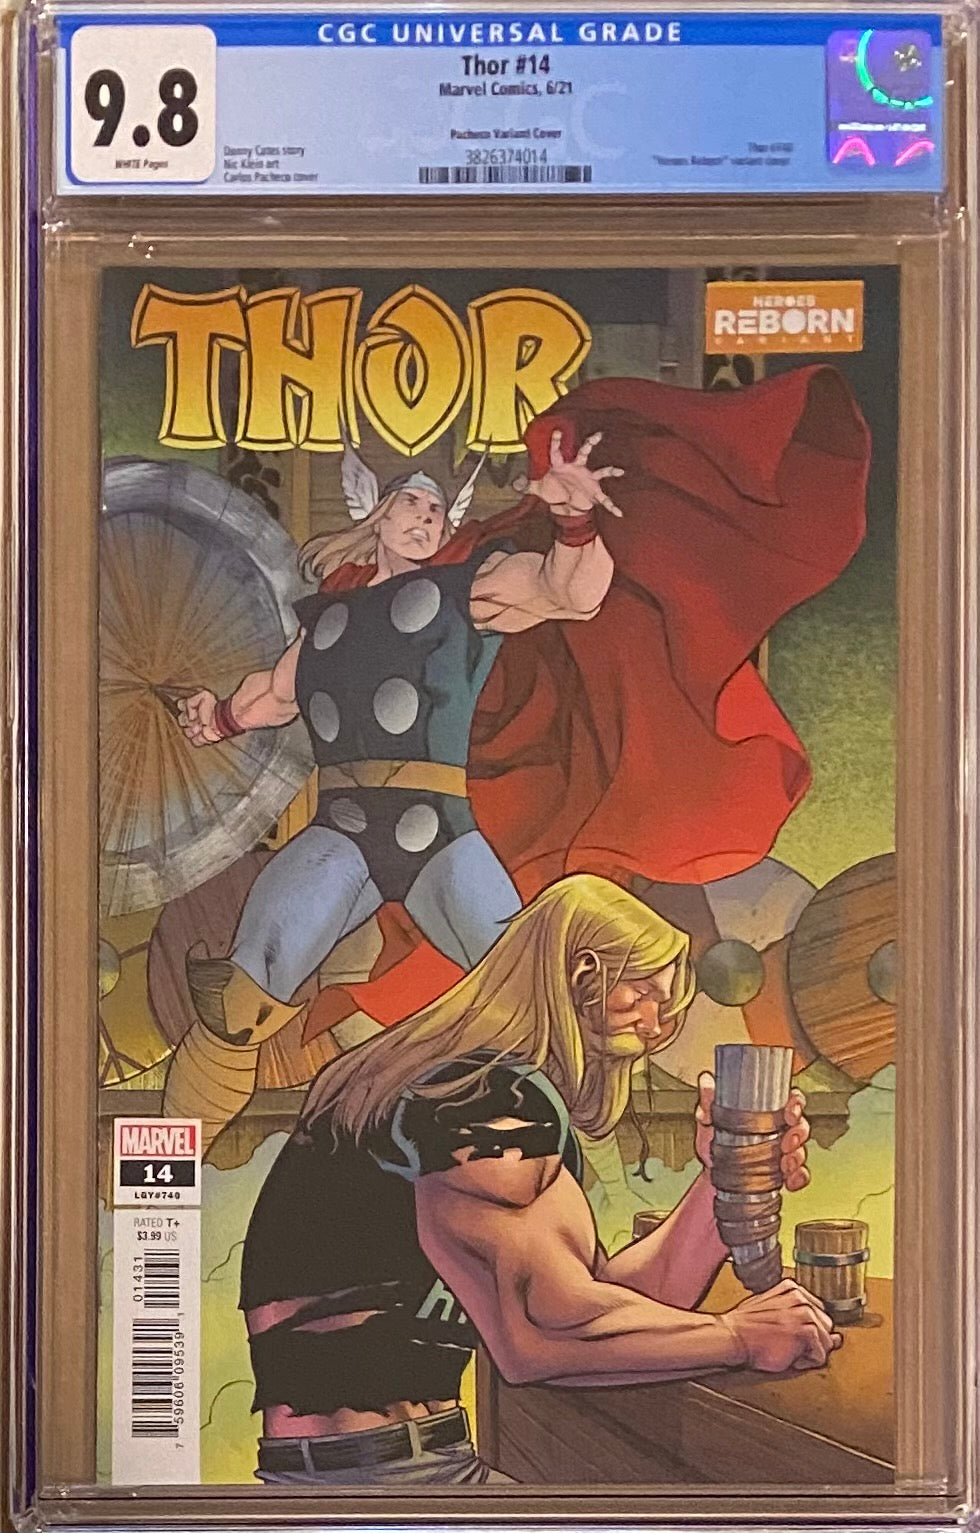 Thor #14 "Heroes Reborn" Variant CGC 9.8